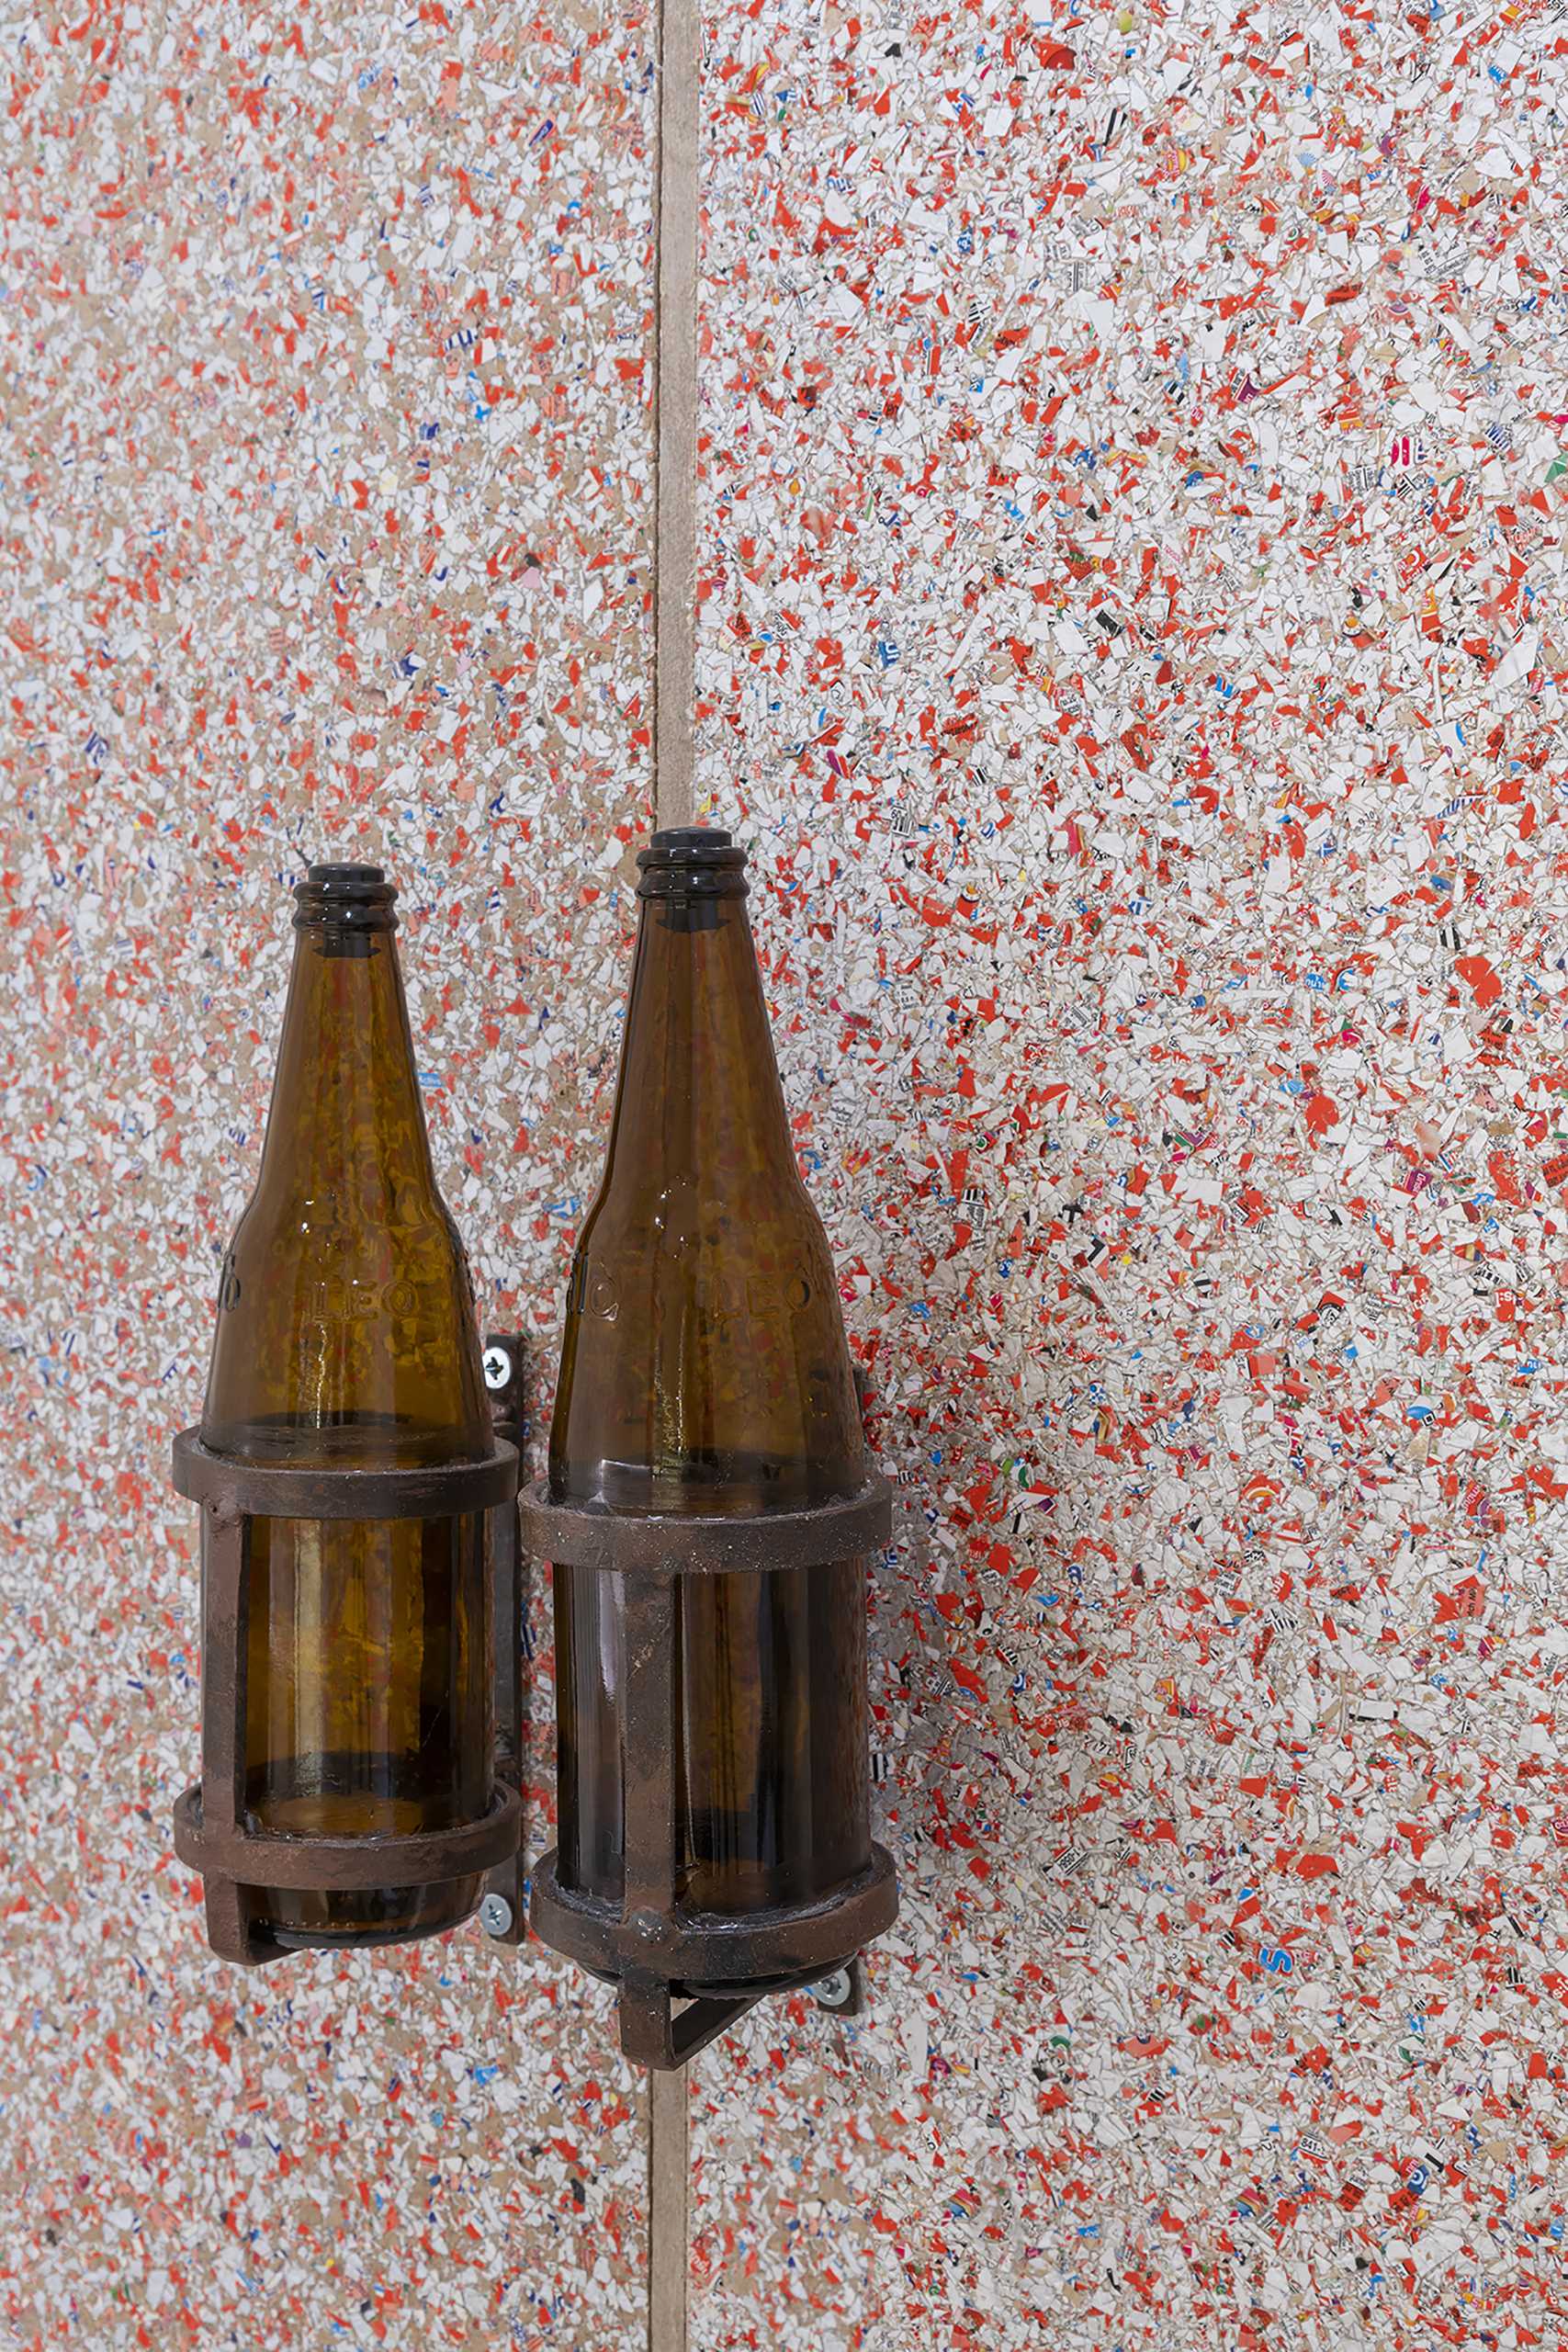 Recycled beer bottles are used as door handles.